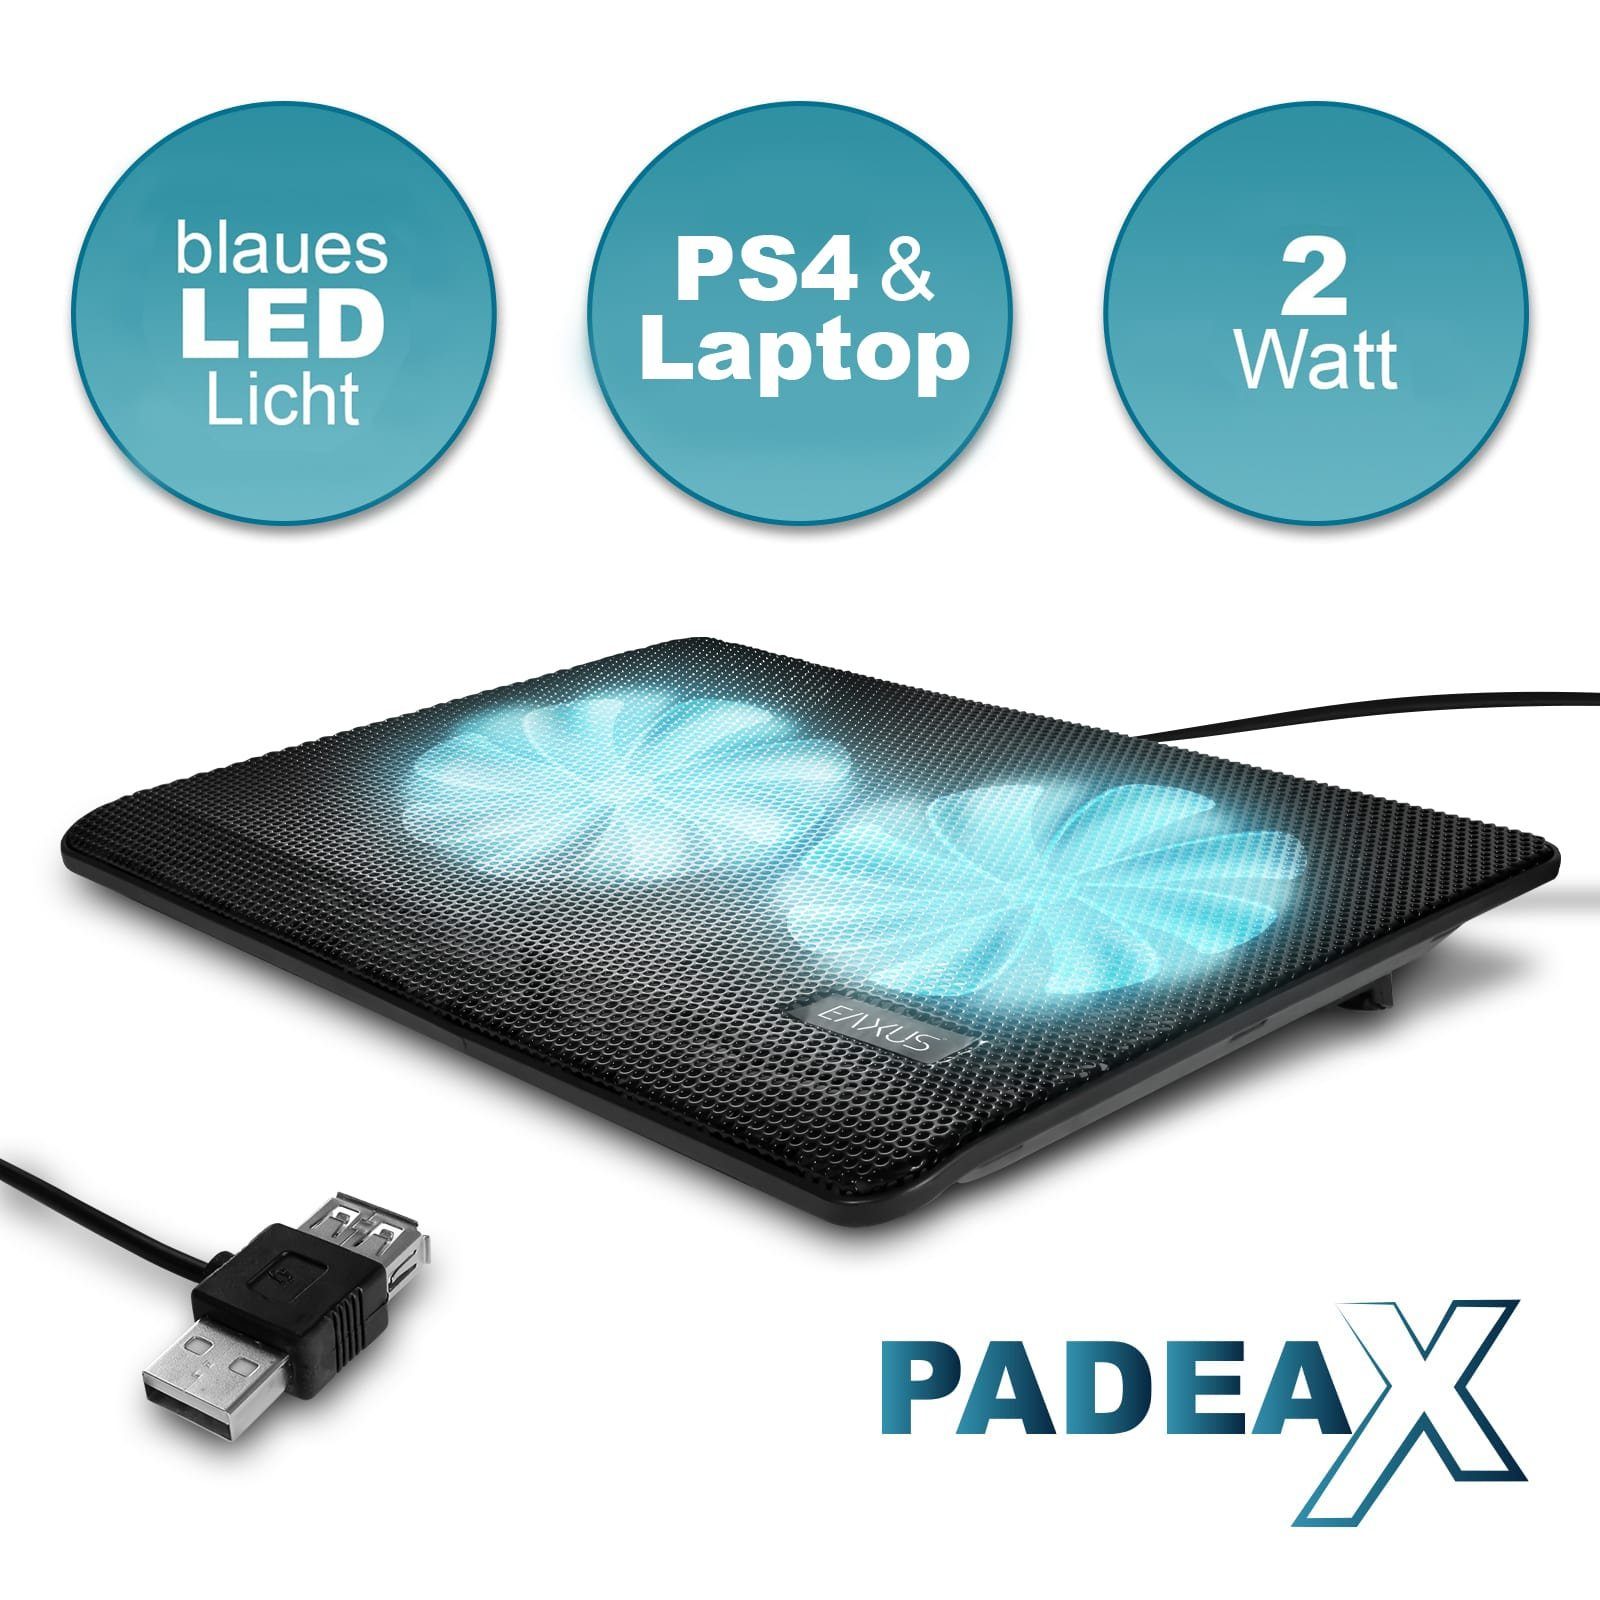 EAXUS Notebook-Kühler mit & weitere Kühler, PlayStation Lüfter 4, für Padeax PS5, Laptops Konsolen. LED-Beleuchtung blauer auch